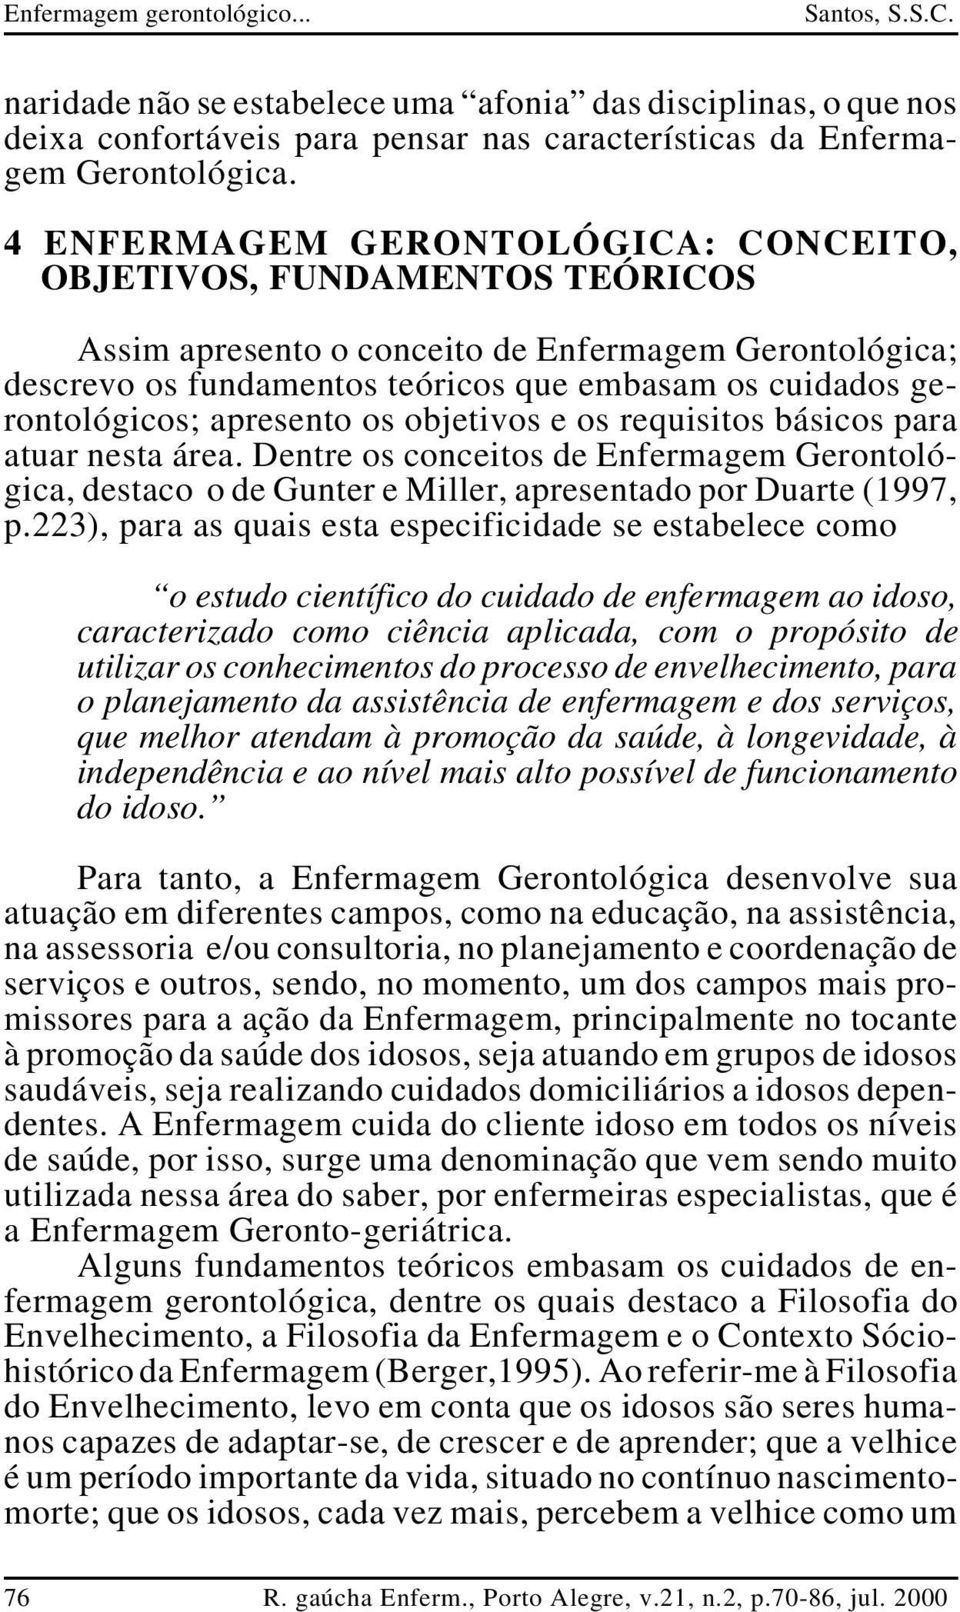 apresento os objetivos e os requisitos básicos para atuar nesta área. Dentre os conceitos de Enfermagem Gerontológica, destaco o de Gunter e Miller, apresentado por Duarte (1997, p.